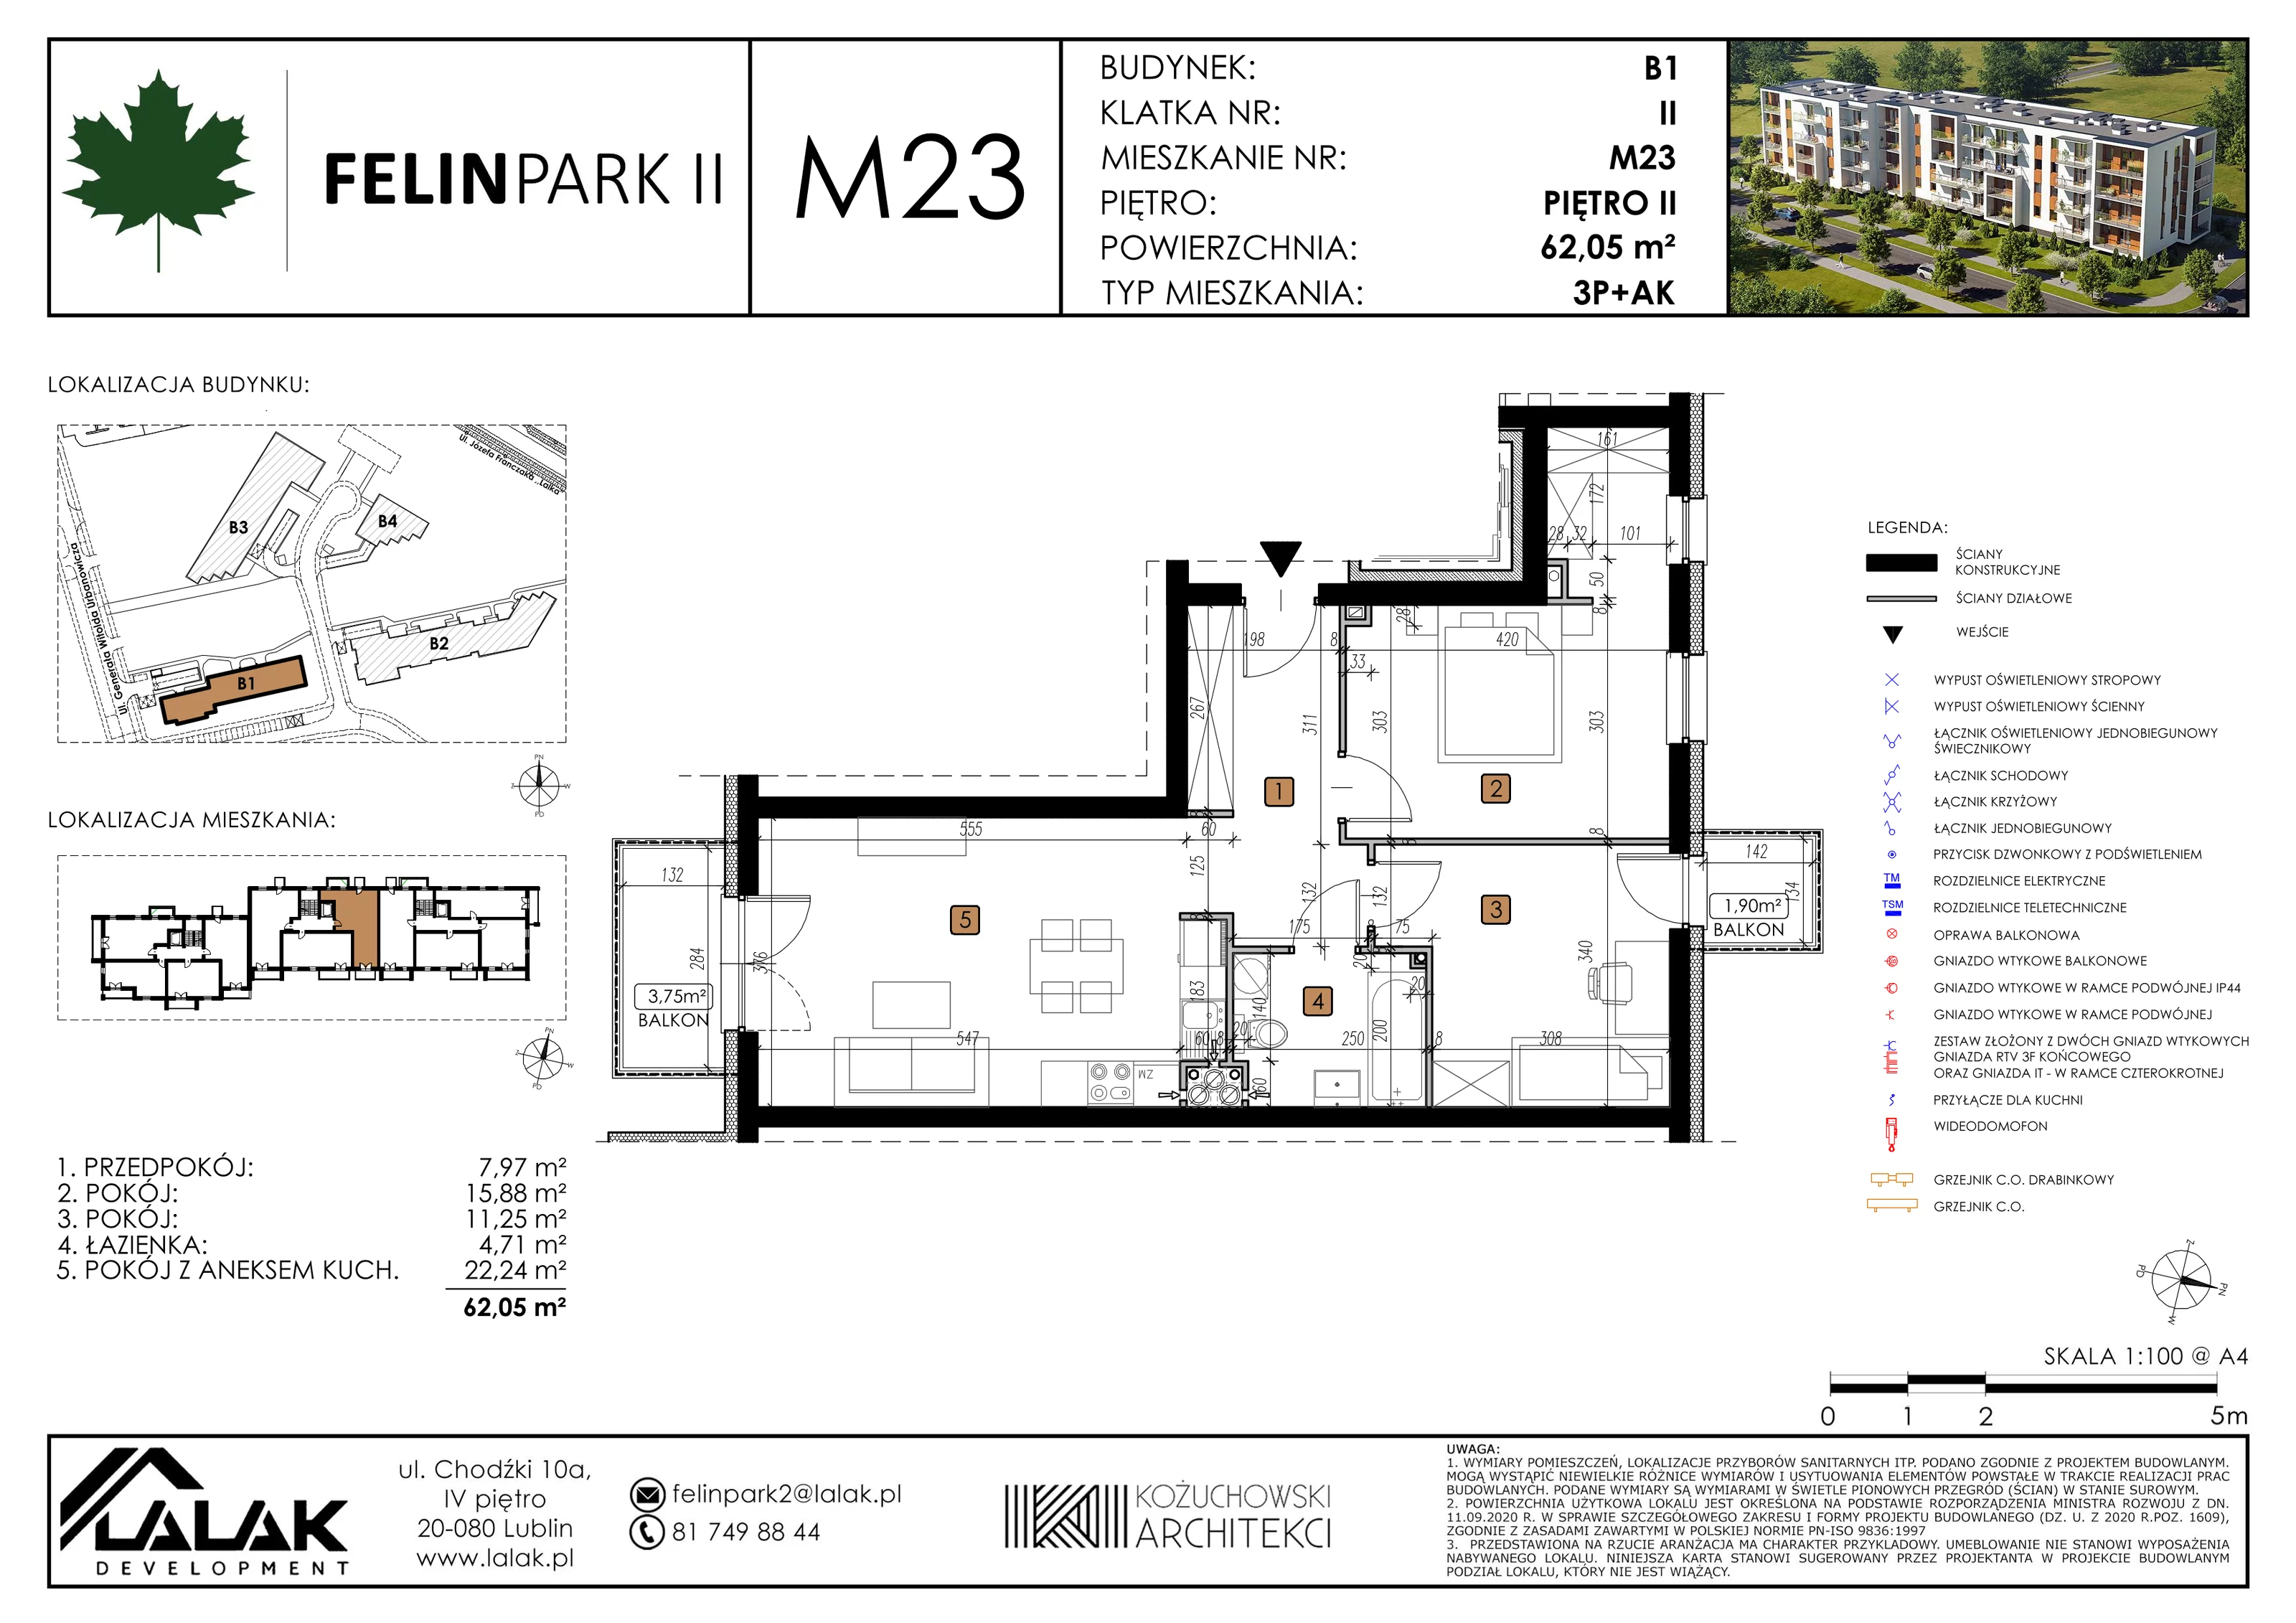 Mieszkanie 62,14 m², piętro 2, oferta nr B1_M23/I, Felin Park II, Lublin, Felin, ul. gen. Stanisława Skalskiego 8-10